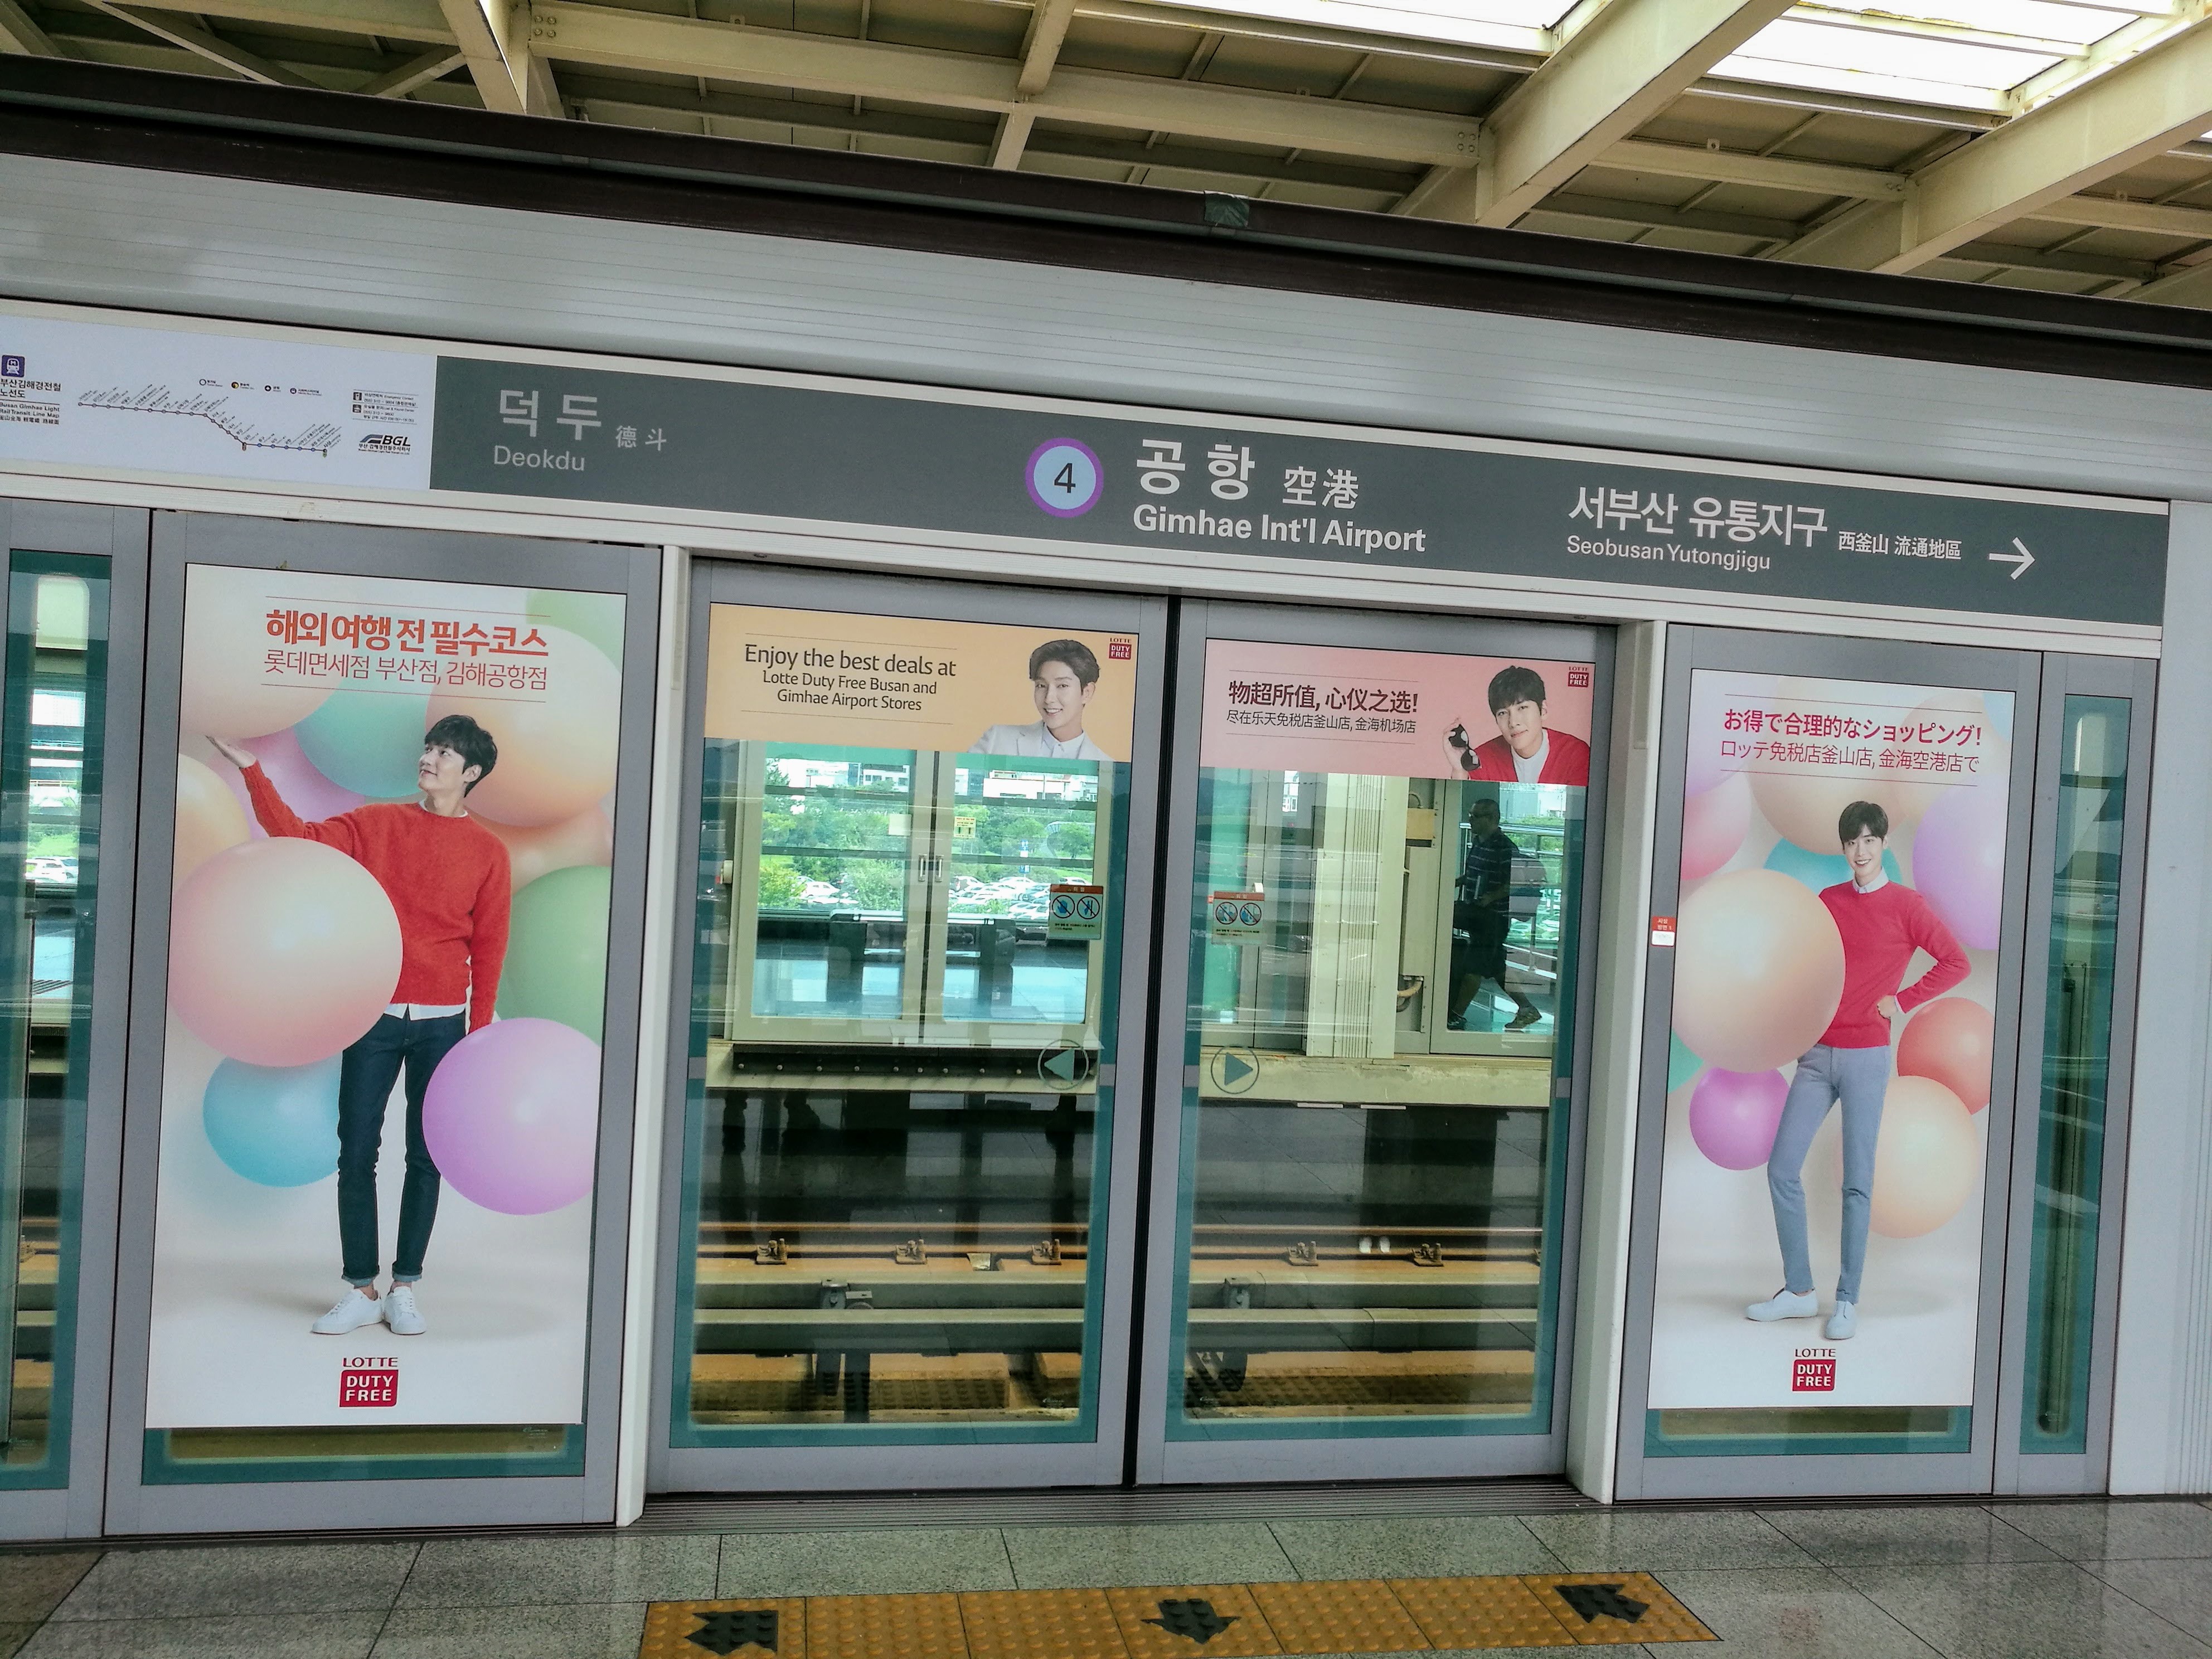 Ez már a puszani metró állomása a Kimhe nemzetközi repülőtérnél. Mindenütt mindenütt sztárokkal kiplakátolva.